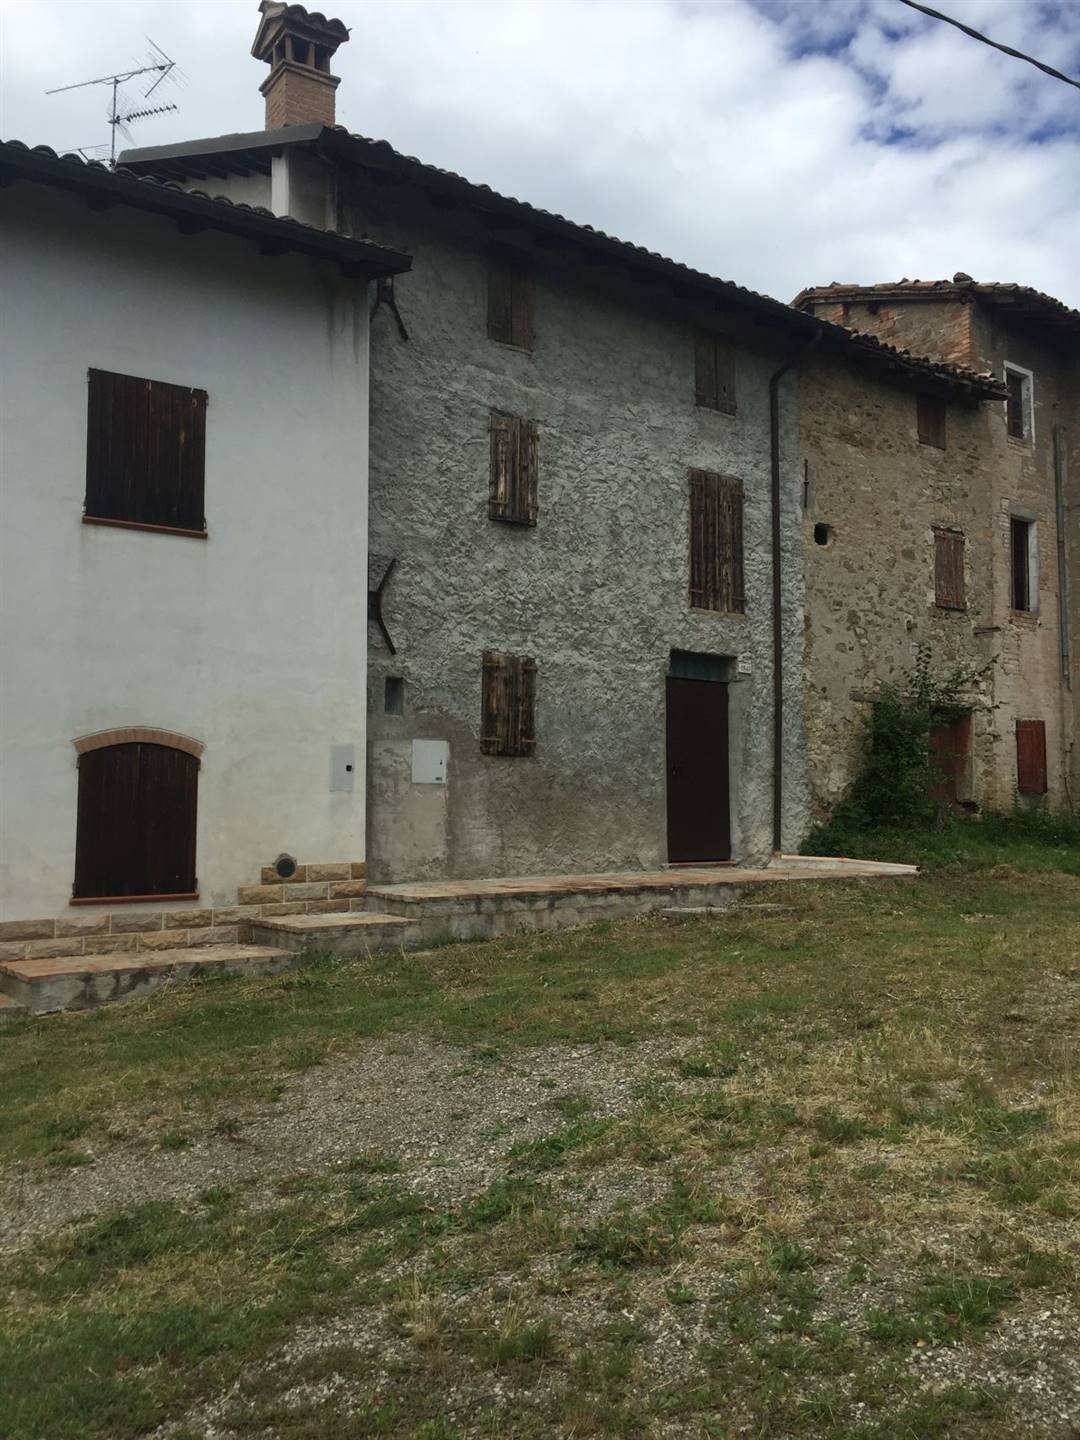 Rustico / Casale in vendita a Marano sul Panaro, 6 locali, prezzo € 85.000 | CambioCasa.it